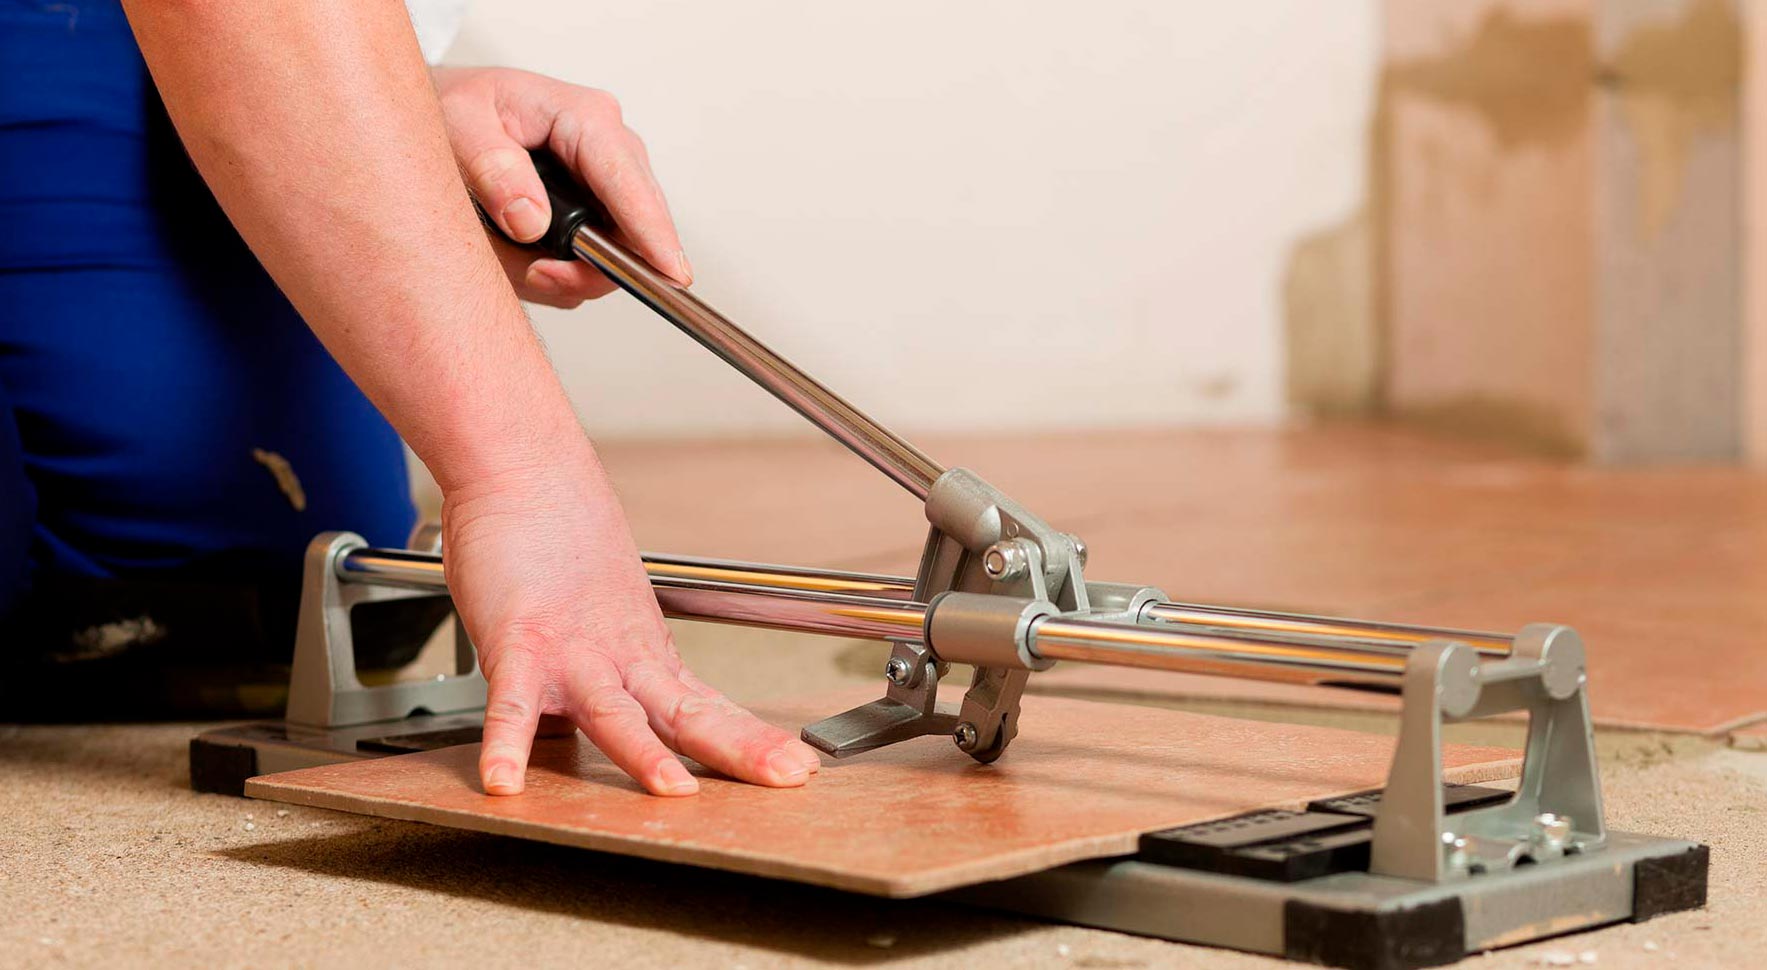 Як розрізати плитку без плиткоріза в домашніх умовах своїми руками? Чим порізати плитку якщо немає плиткоріза?